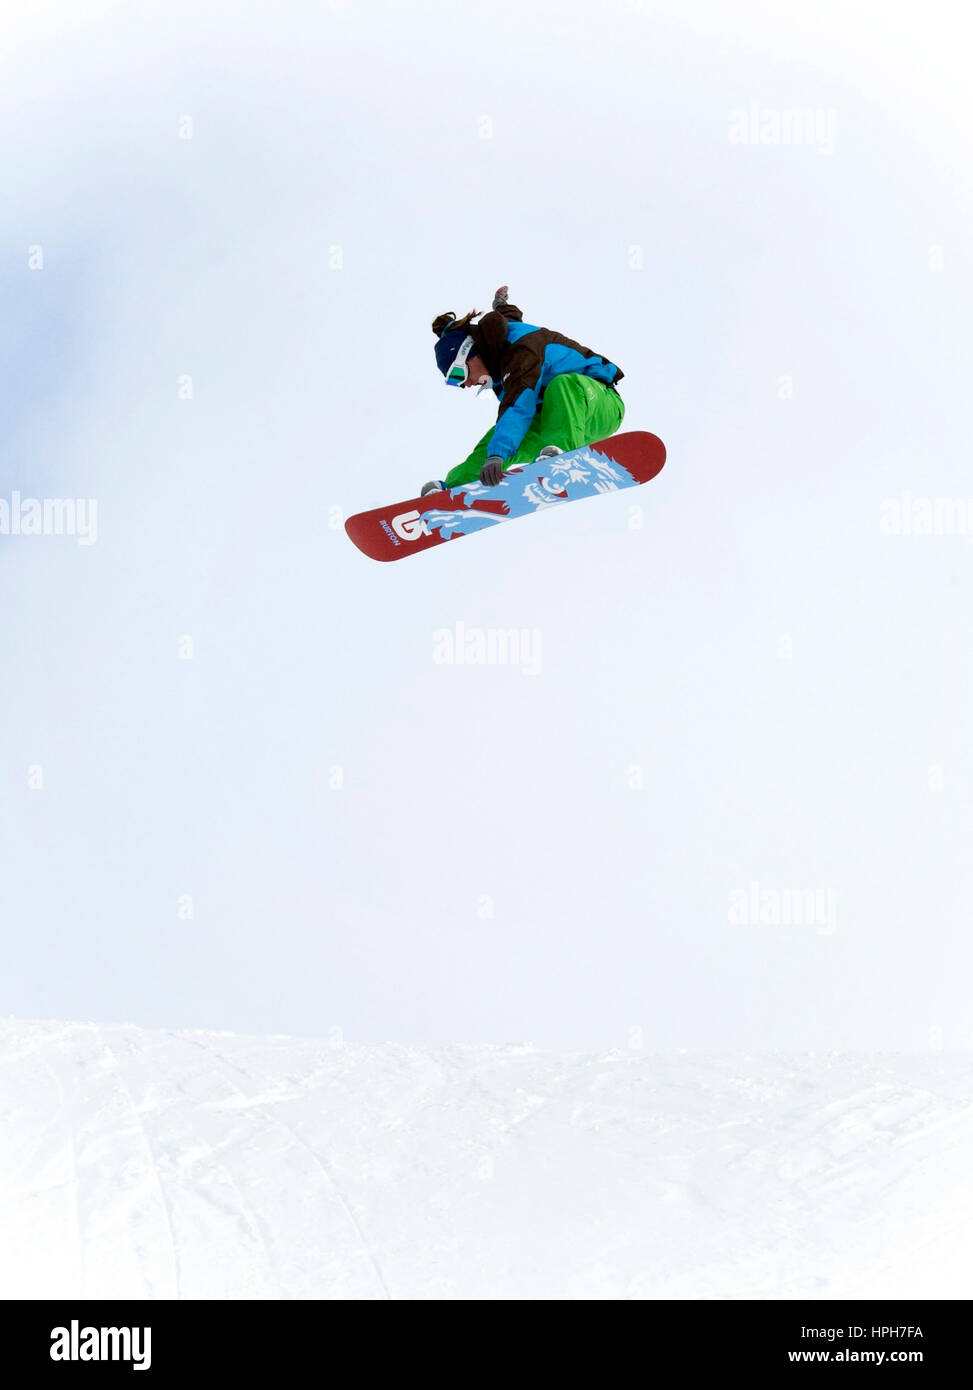 Snowboarder im Sprung - snowboarder jumping Stock Photo